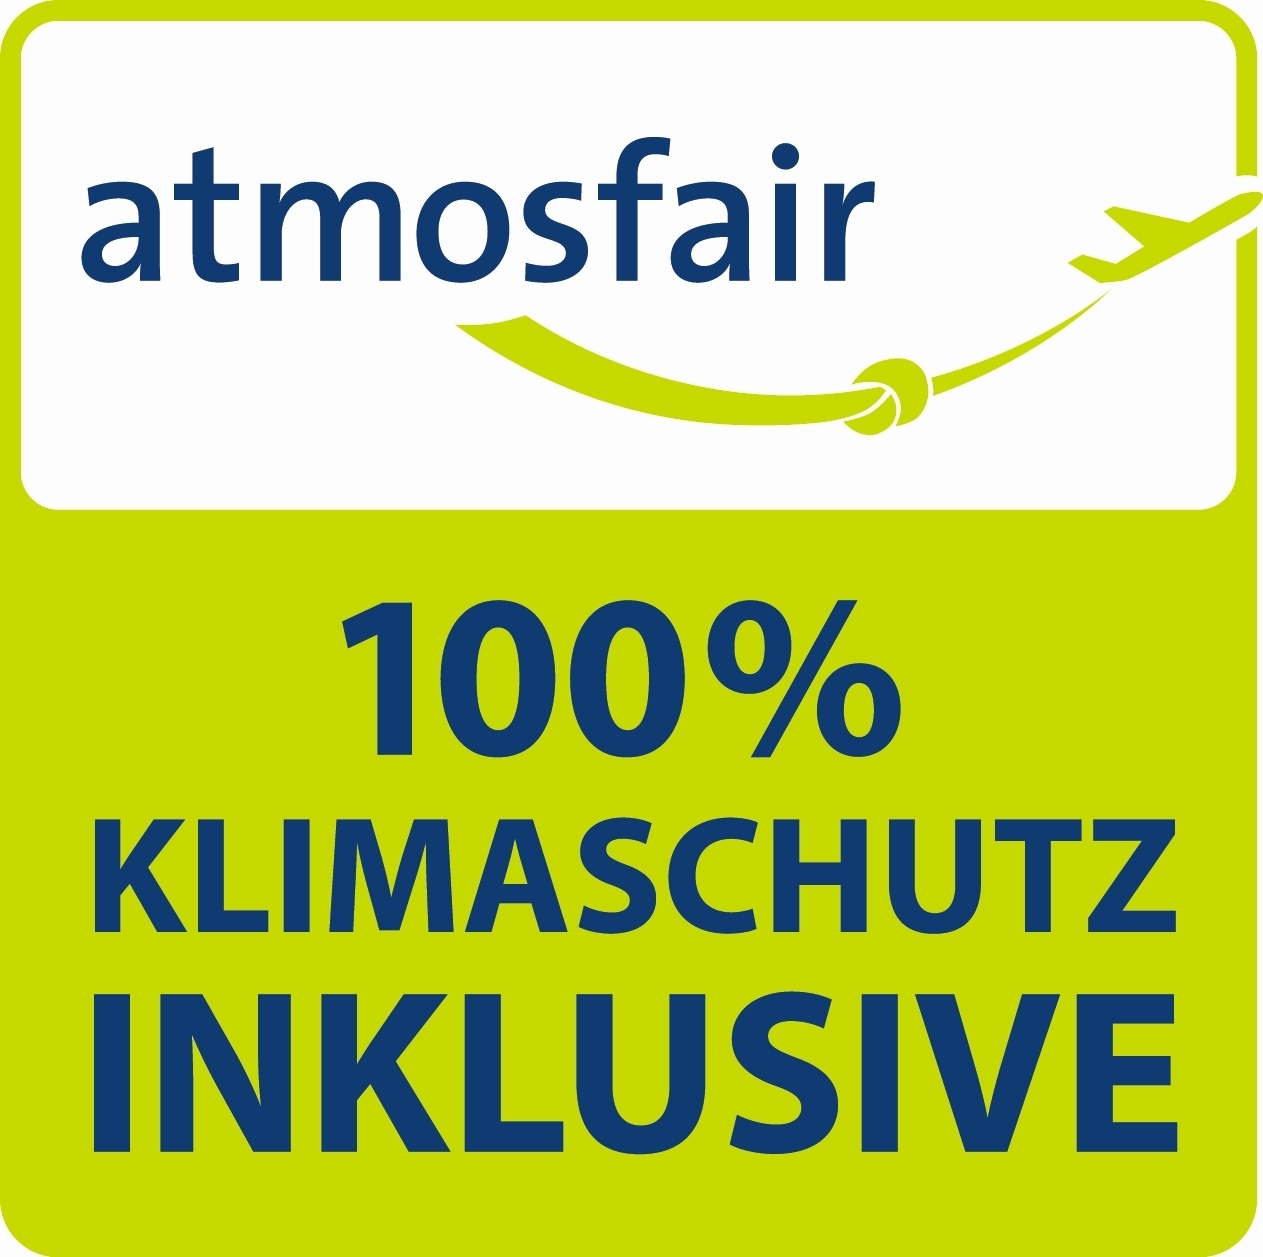 Logo der atmosfair CO2 Kompensation mit der Aufschrift: atmosfair - 100% Klimaschutz INKLUSIVE in grün, blau, weiß